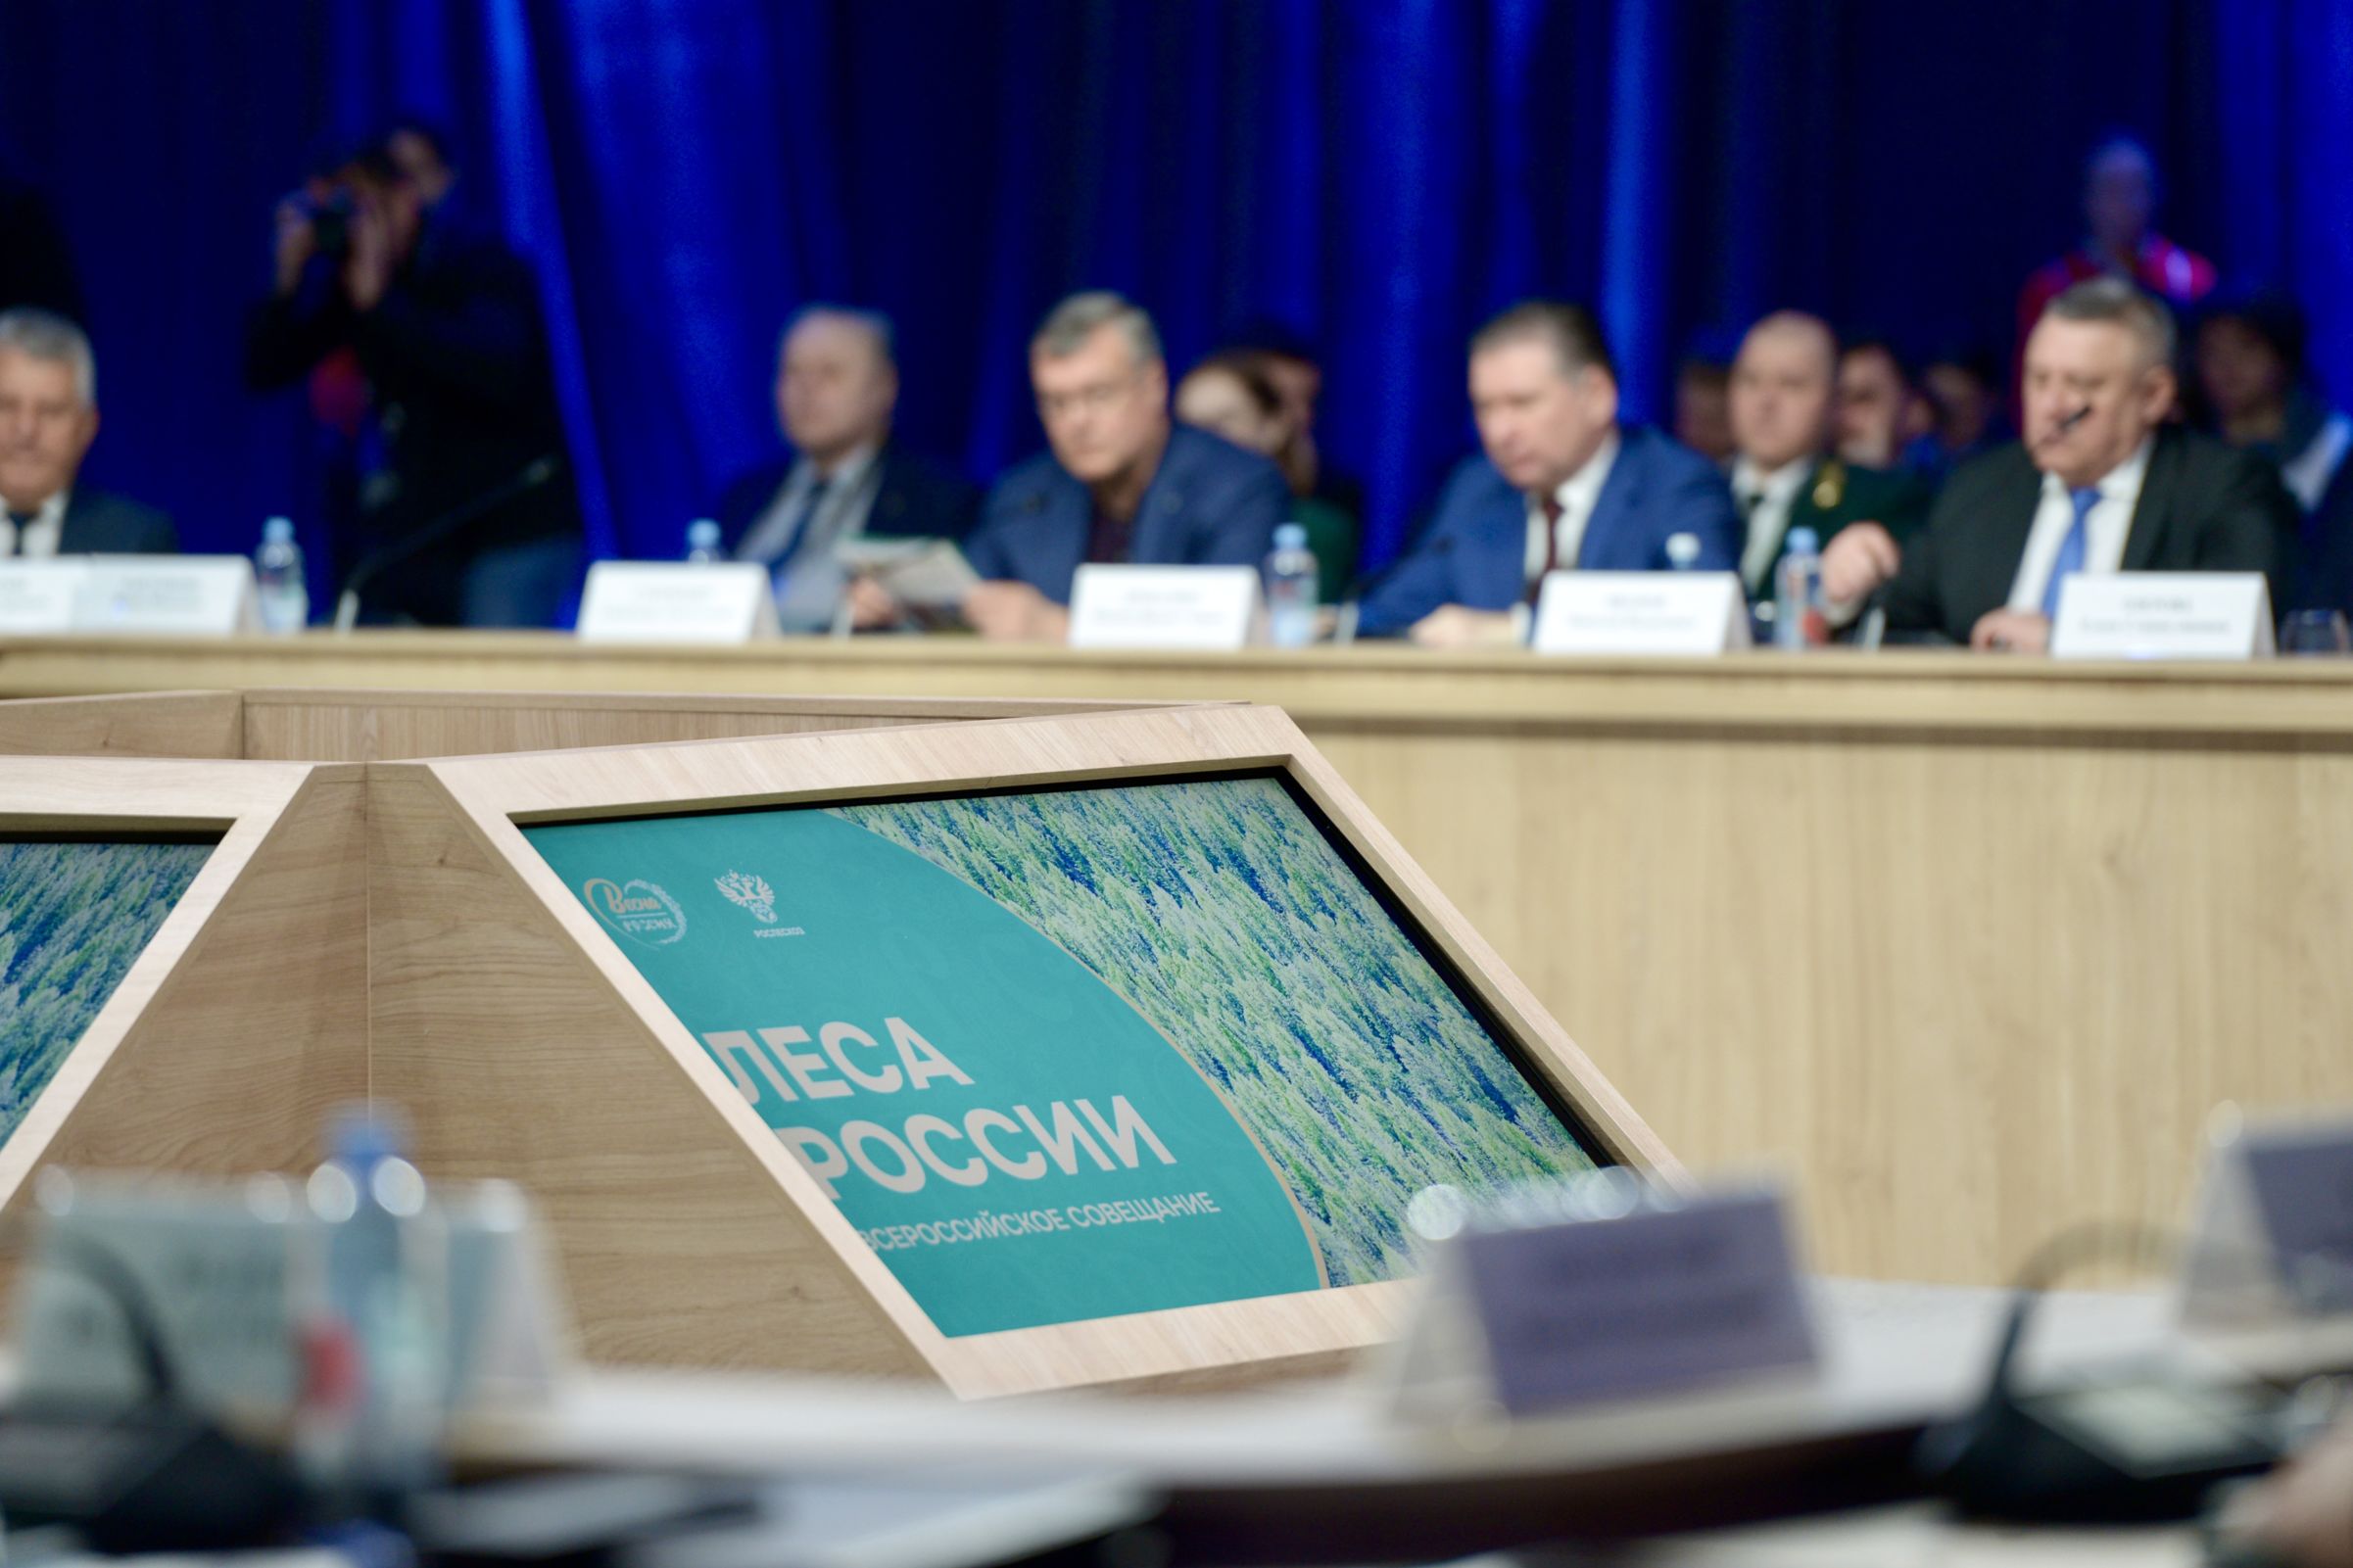 Итоги работы в сфере лесного хозяйства обсудили на выставке «Россия» при участии ярославских представителей